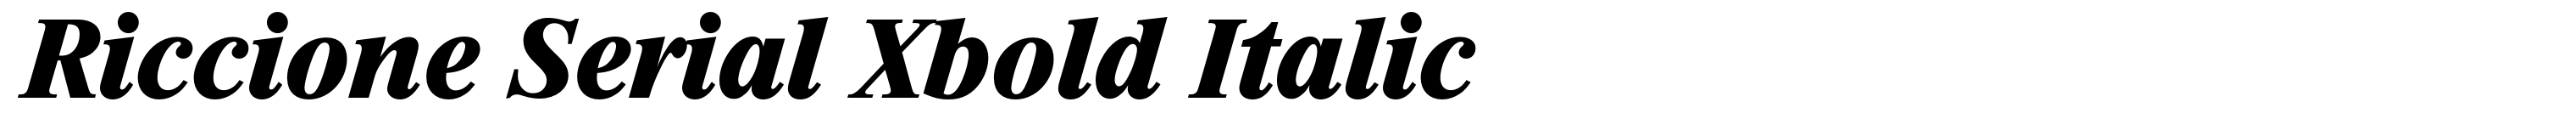 Riccione Serial Xbold Italic